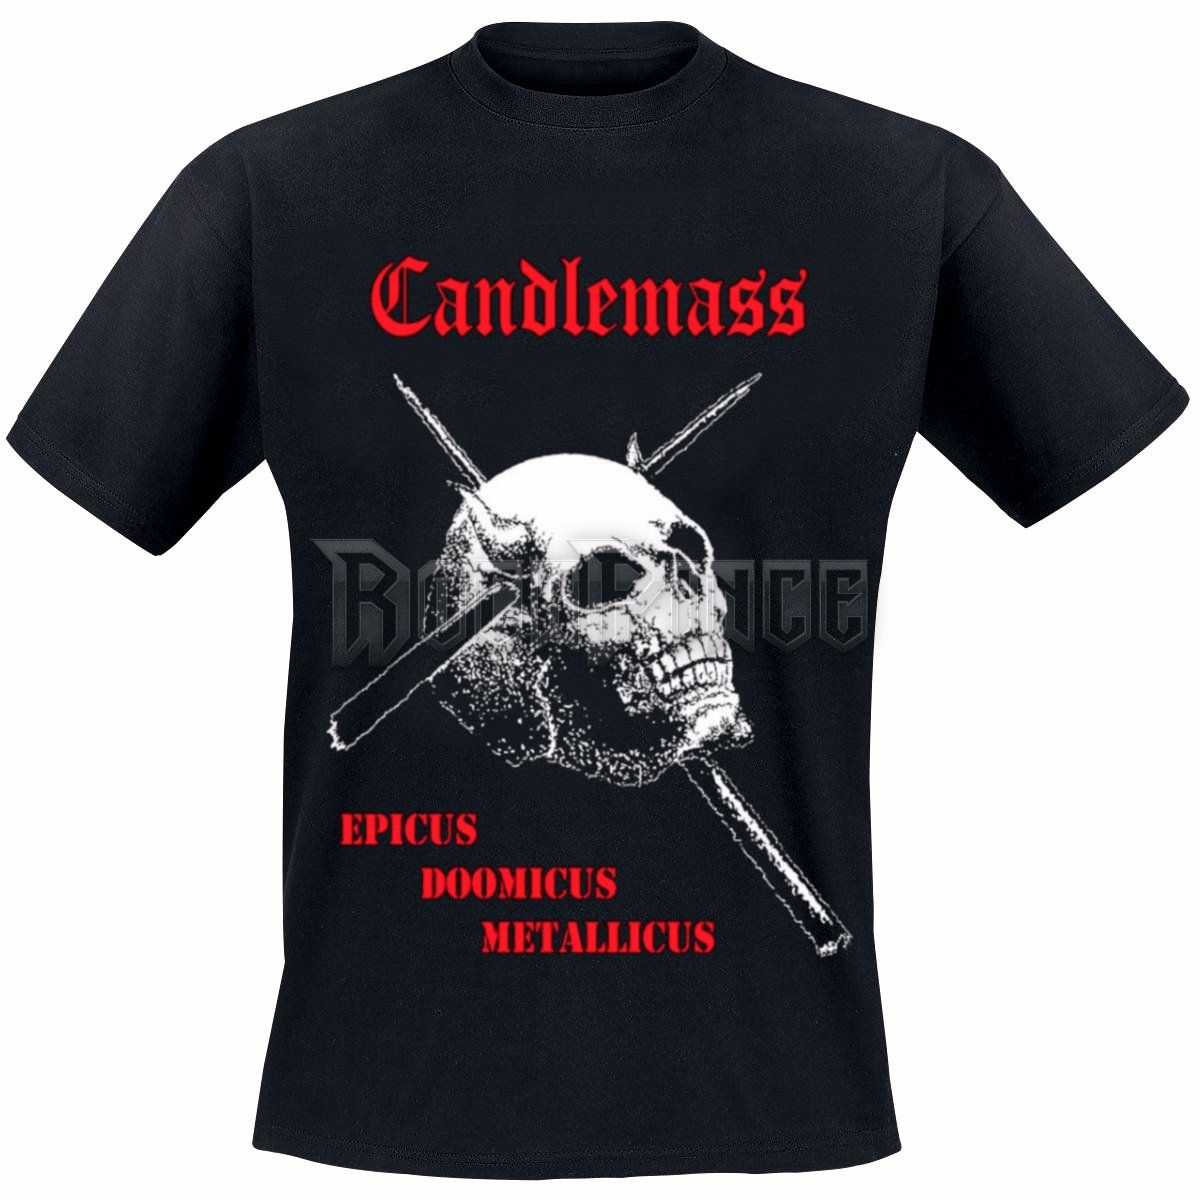 Candlemass - Epicus Doomicus Metallicus - 1450 - UNISEX PÓLÓ